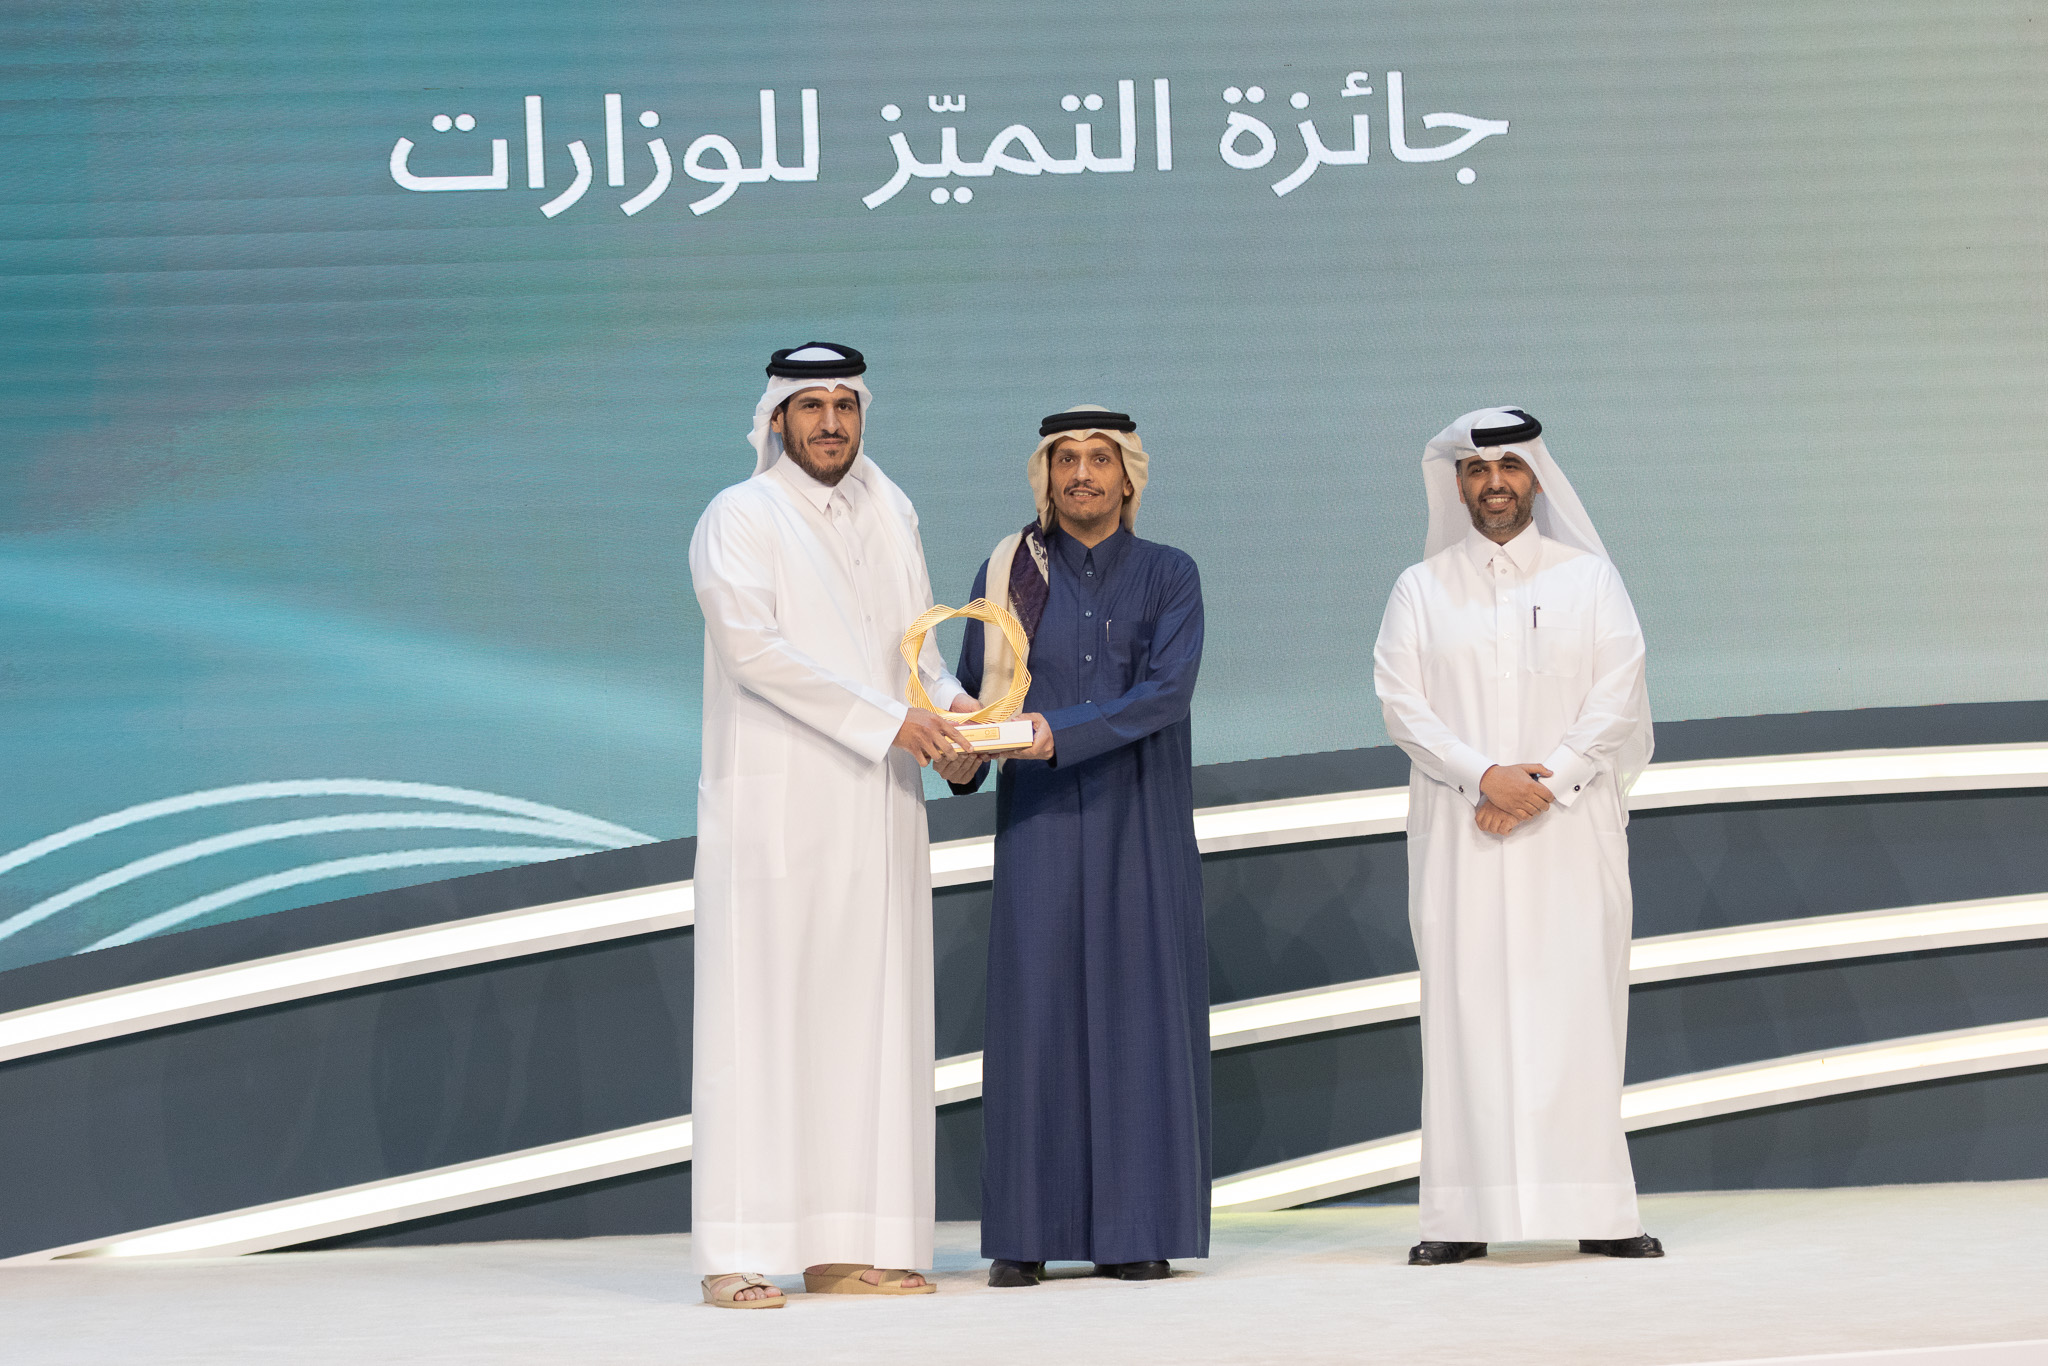 وزارة التجارة والصناعة تفوز بجائزة قطر للتميز الحكومي